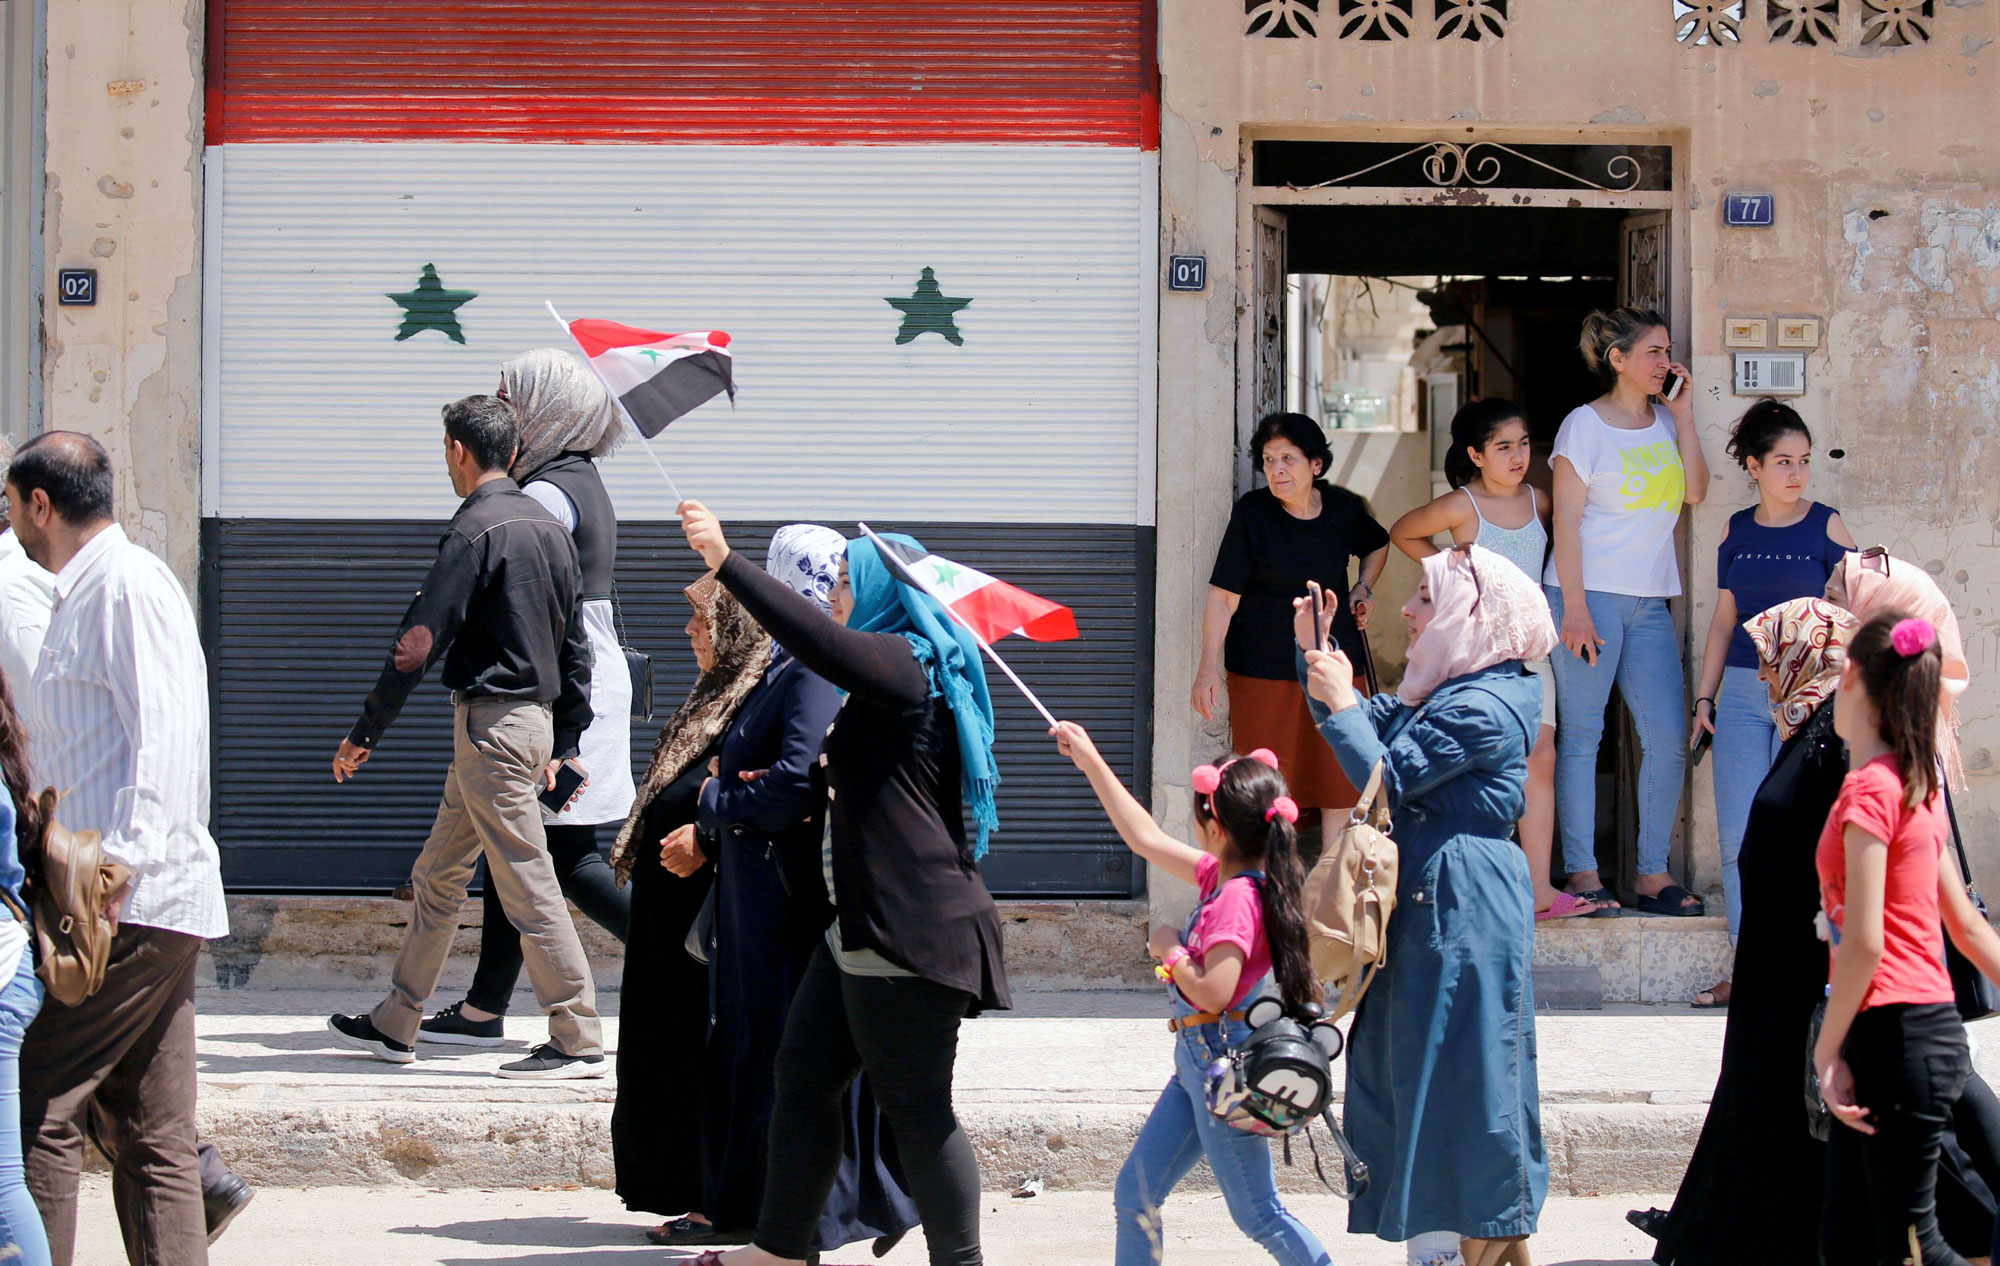 وصول نازحين سوريين إلى مدينة القصير السورية قادمين من لبنان